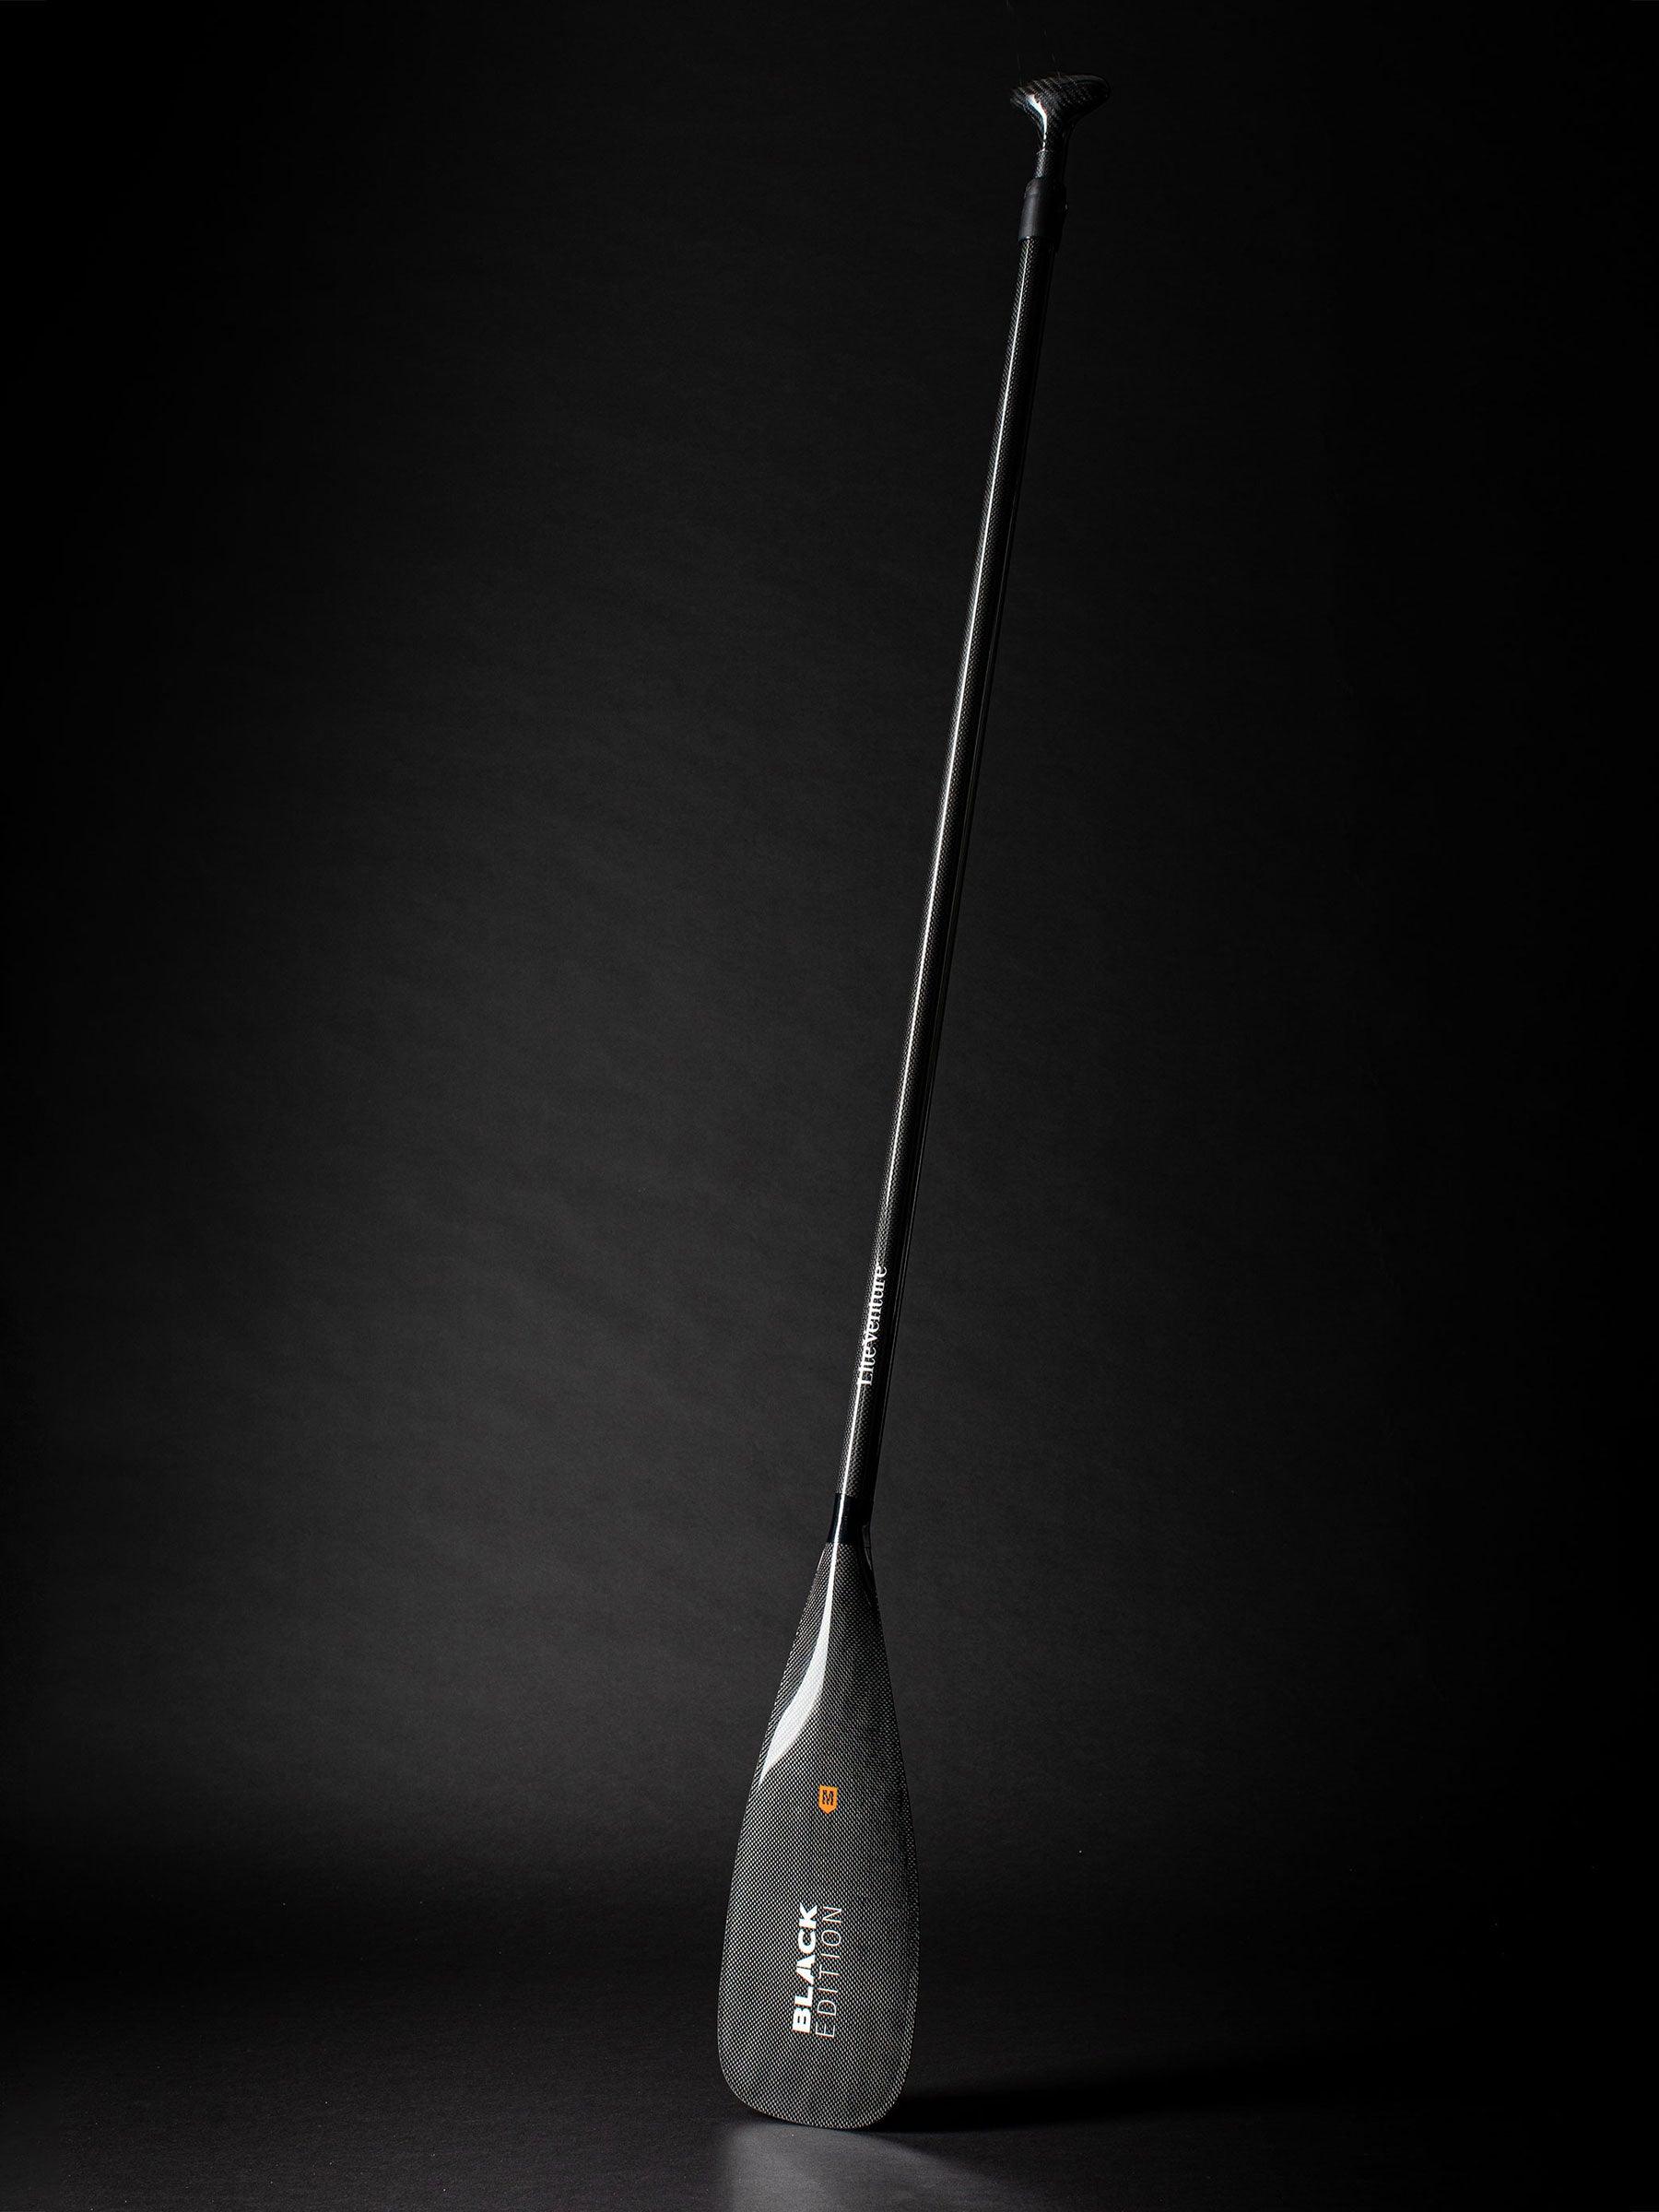 Produktbild von SUP " ULTRA Light Bundle-12'2" x 30"-+ Carbonpaddel " der Marke Lite Venture für 1190.00 €. Erhältlich online bei Lite Venture ( www.liteventure.de )